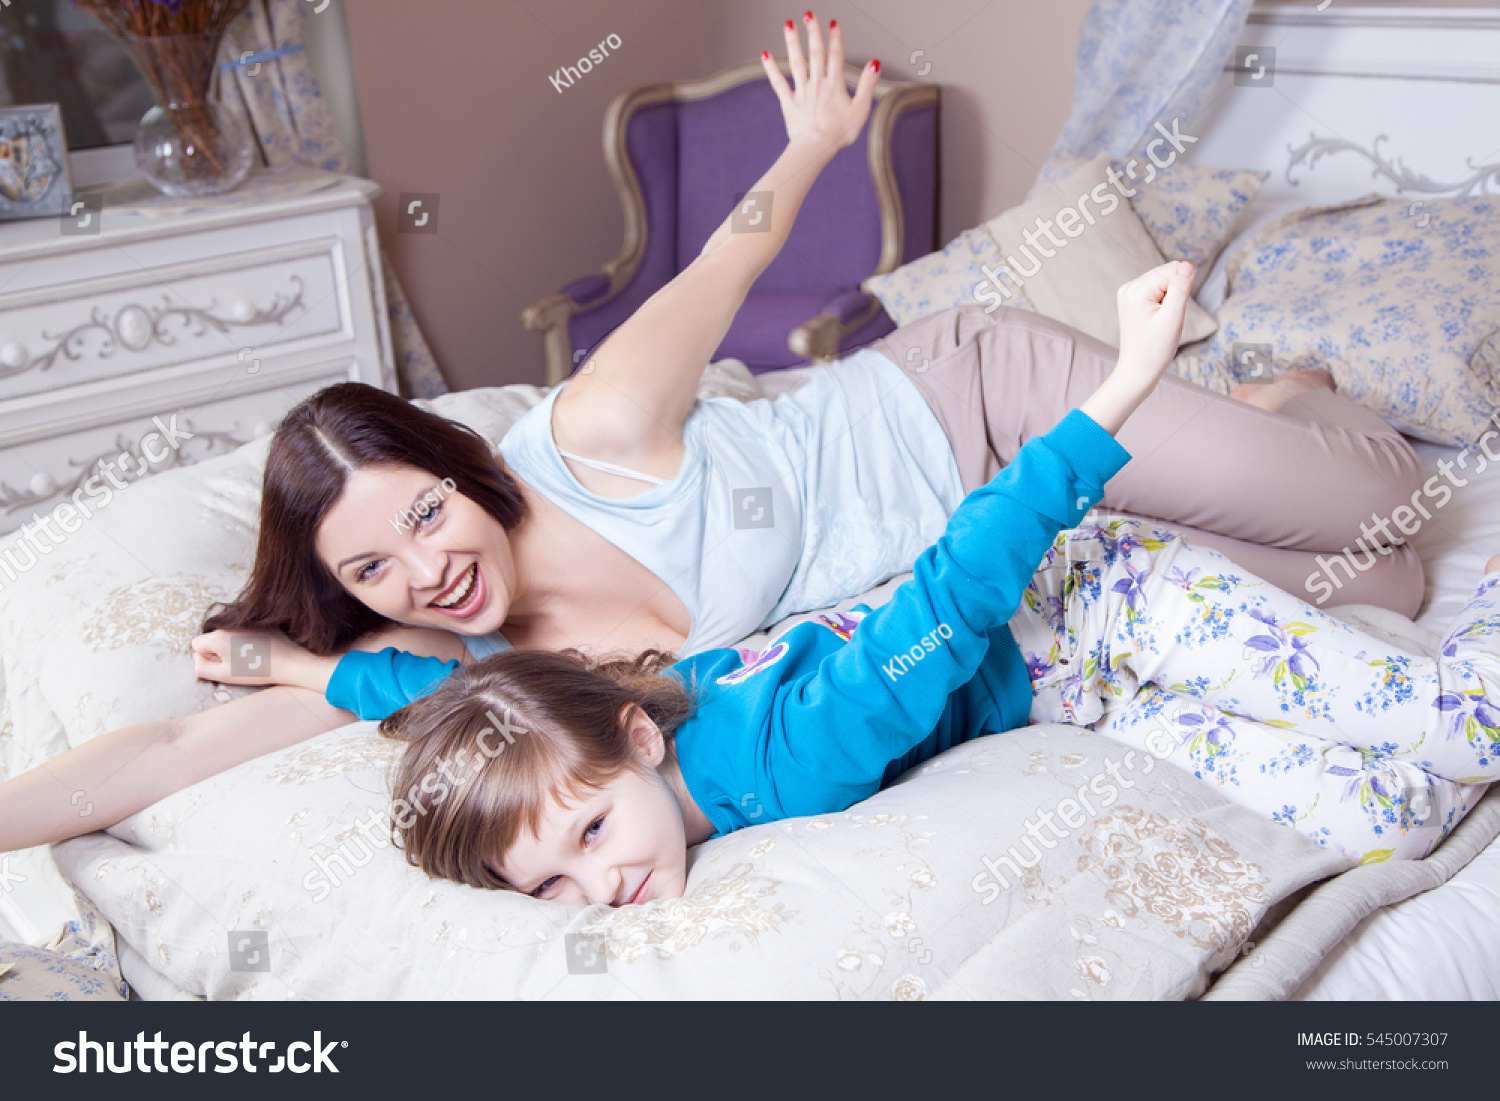 Она лежит как маме. Дочка лежит на маме. Мама с дочкой на кровати. С дочей в кровати. Мама и дочка лежат в постели.